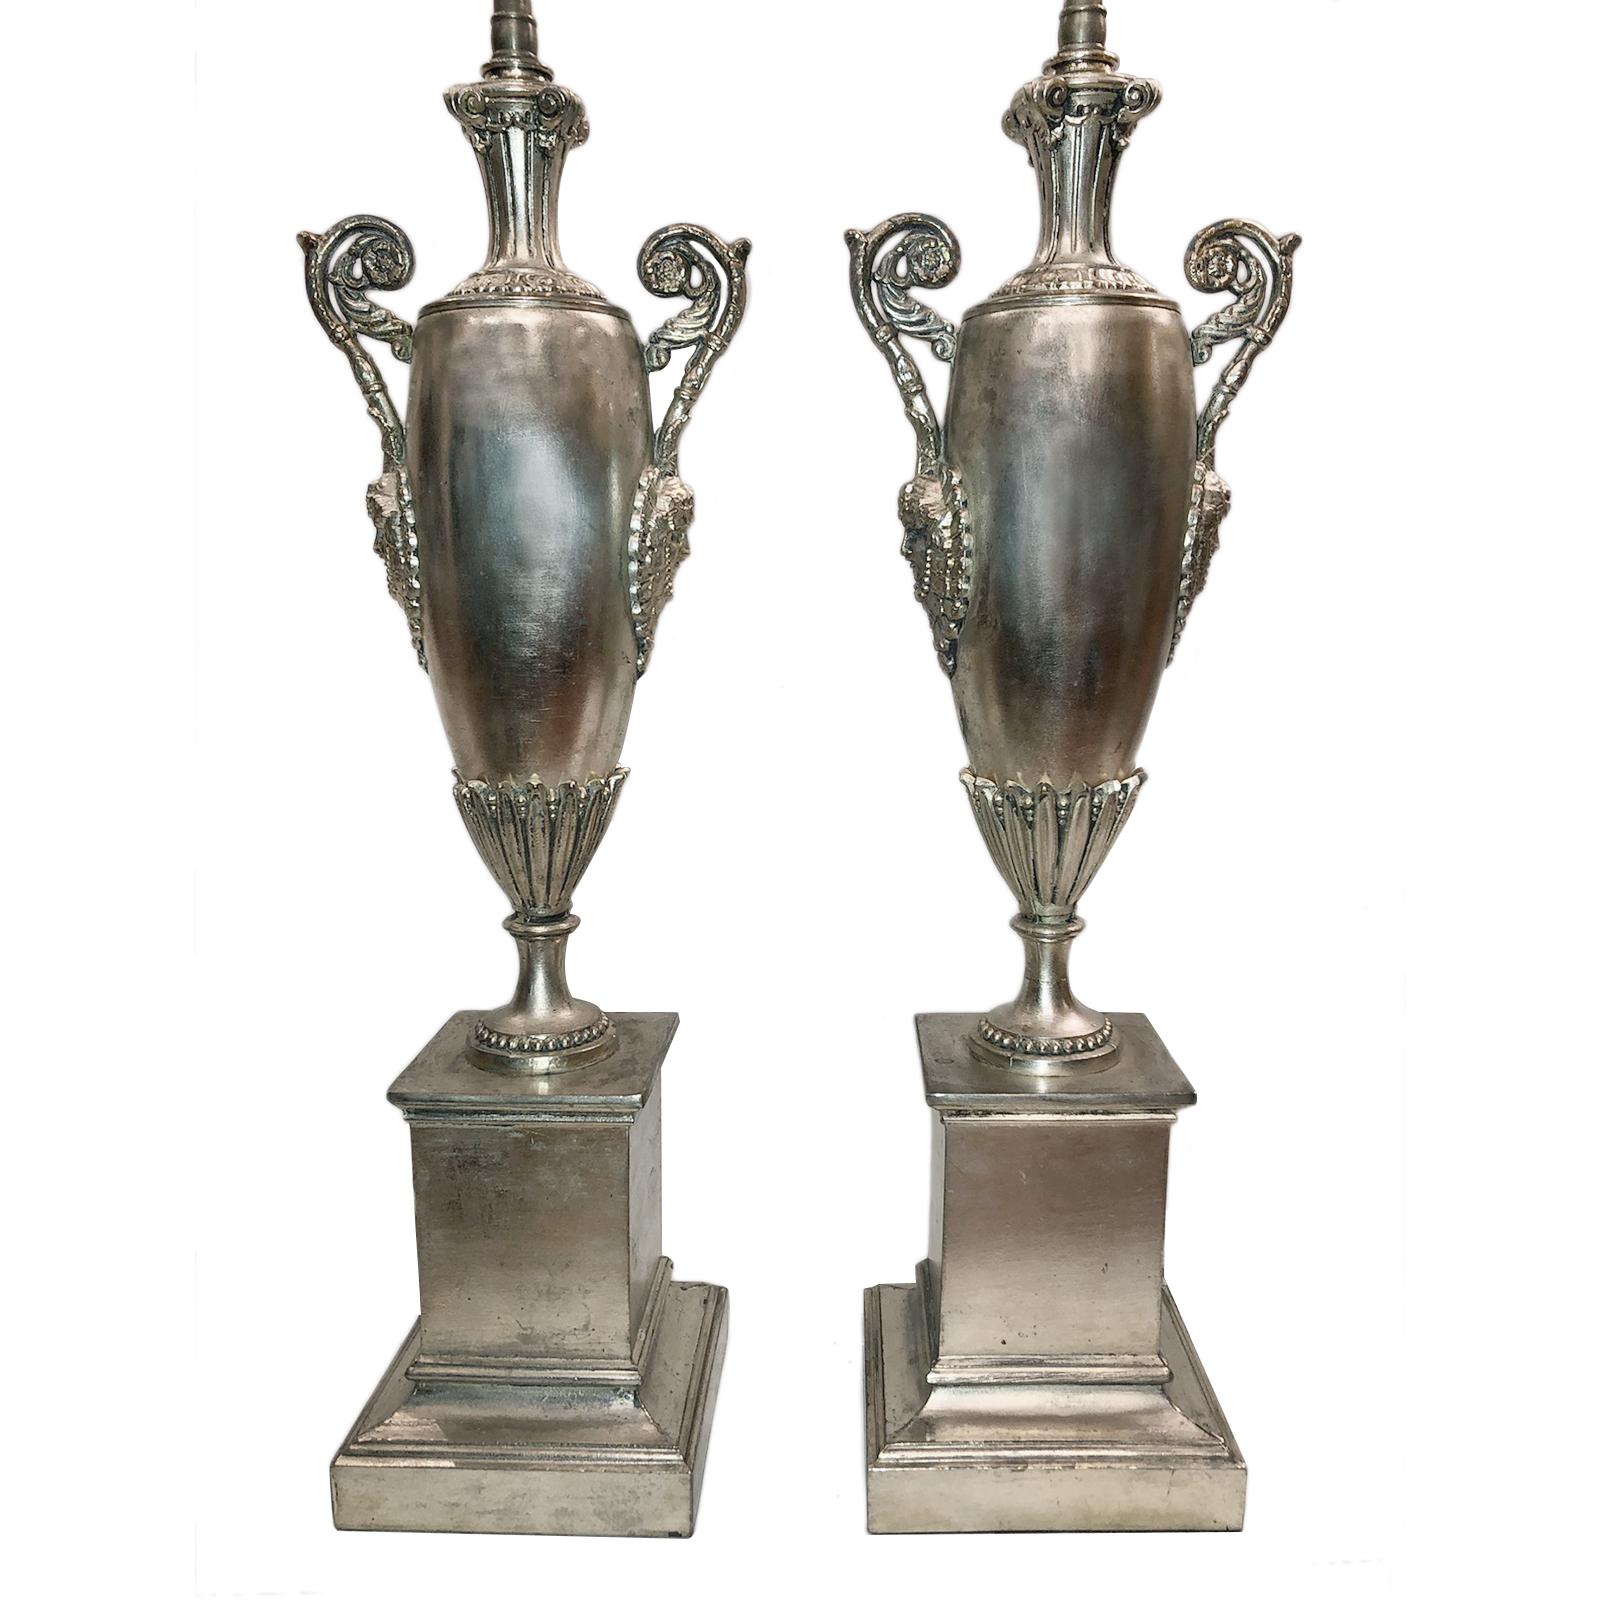 Paire de lampes de table de style Empire en argent plaqué, datant des années 1920, en forme d'urne avec des masques représentés sur les côtés.

Mesures :
Hauteur du corps 20,5
Diamètre : 6